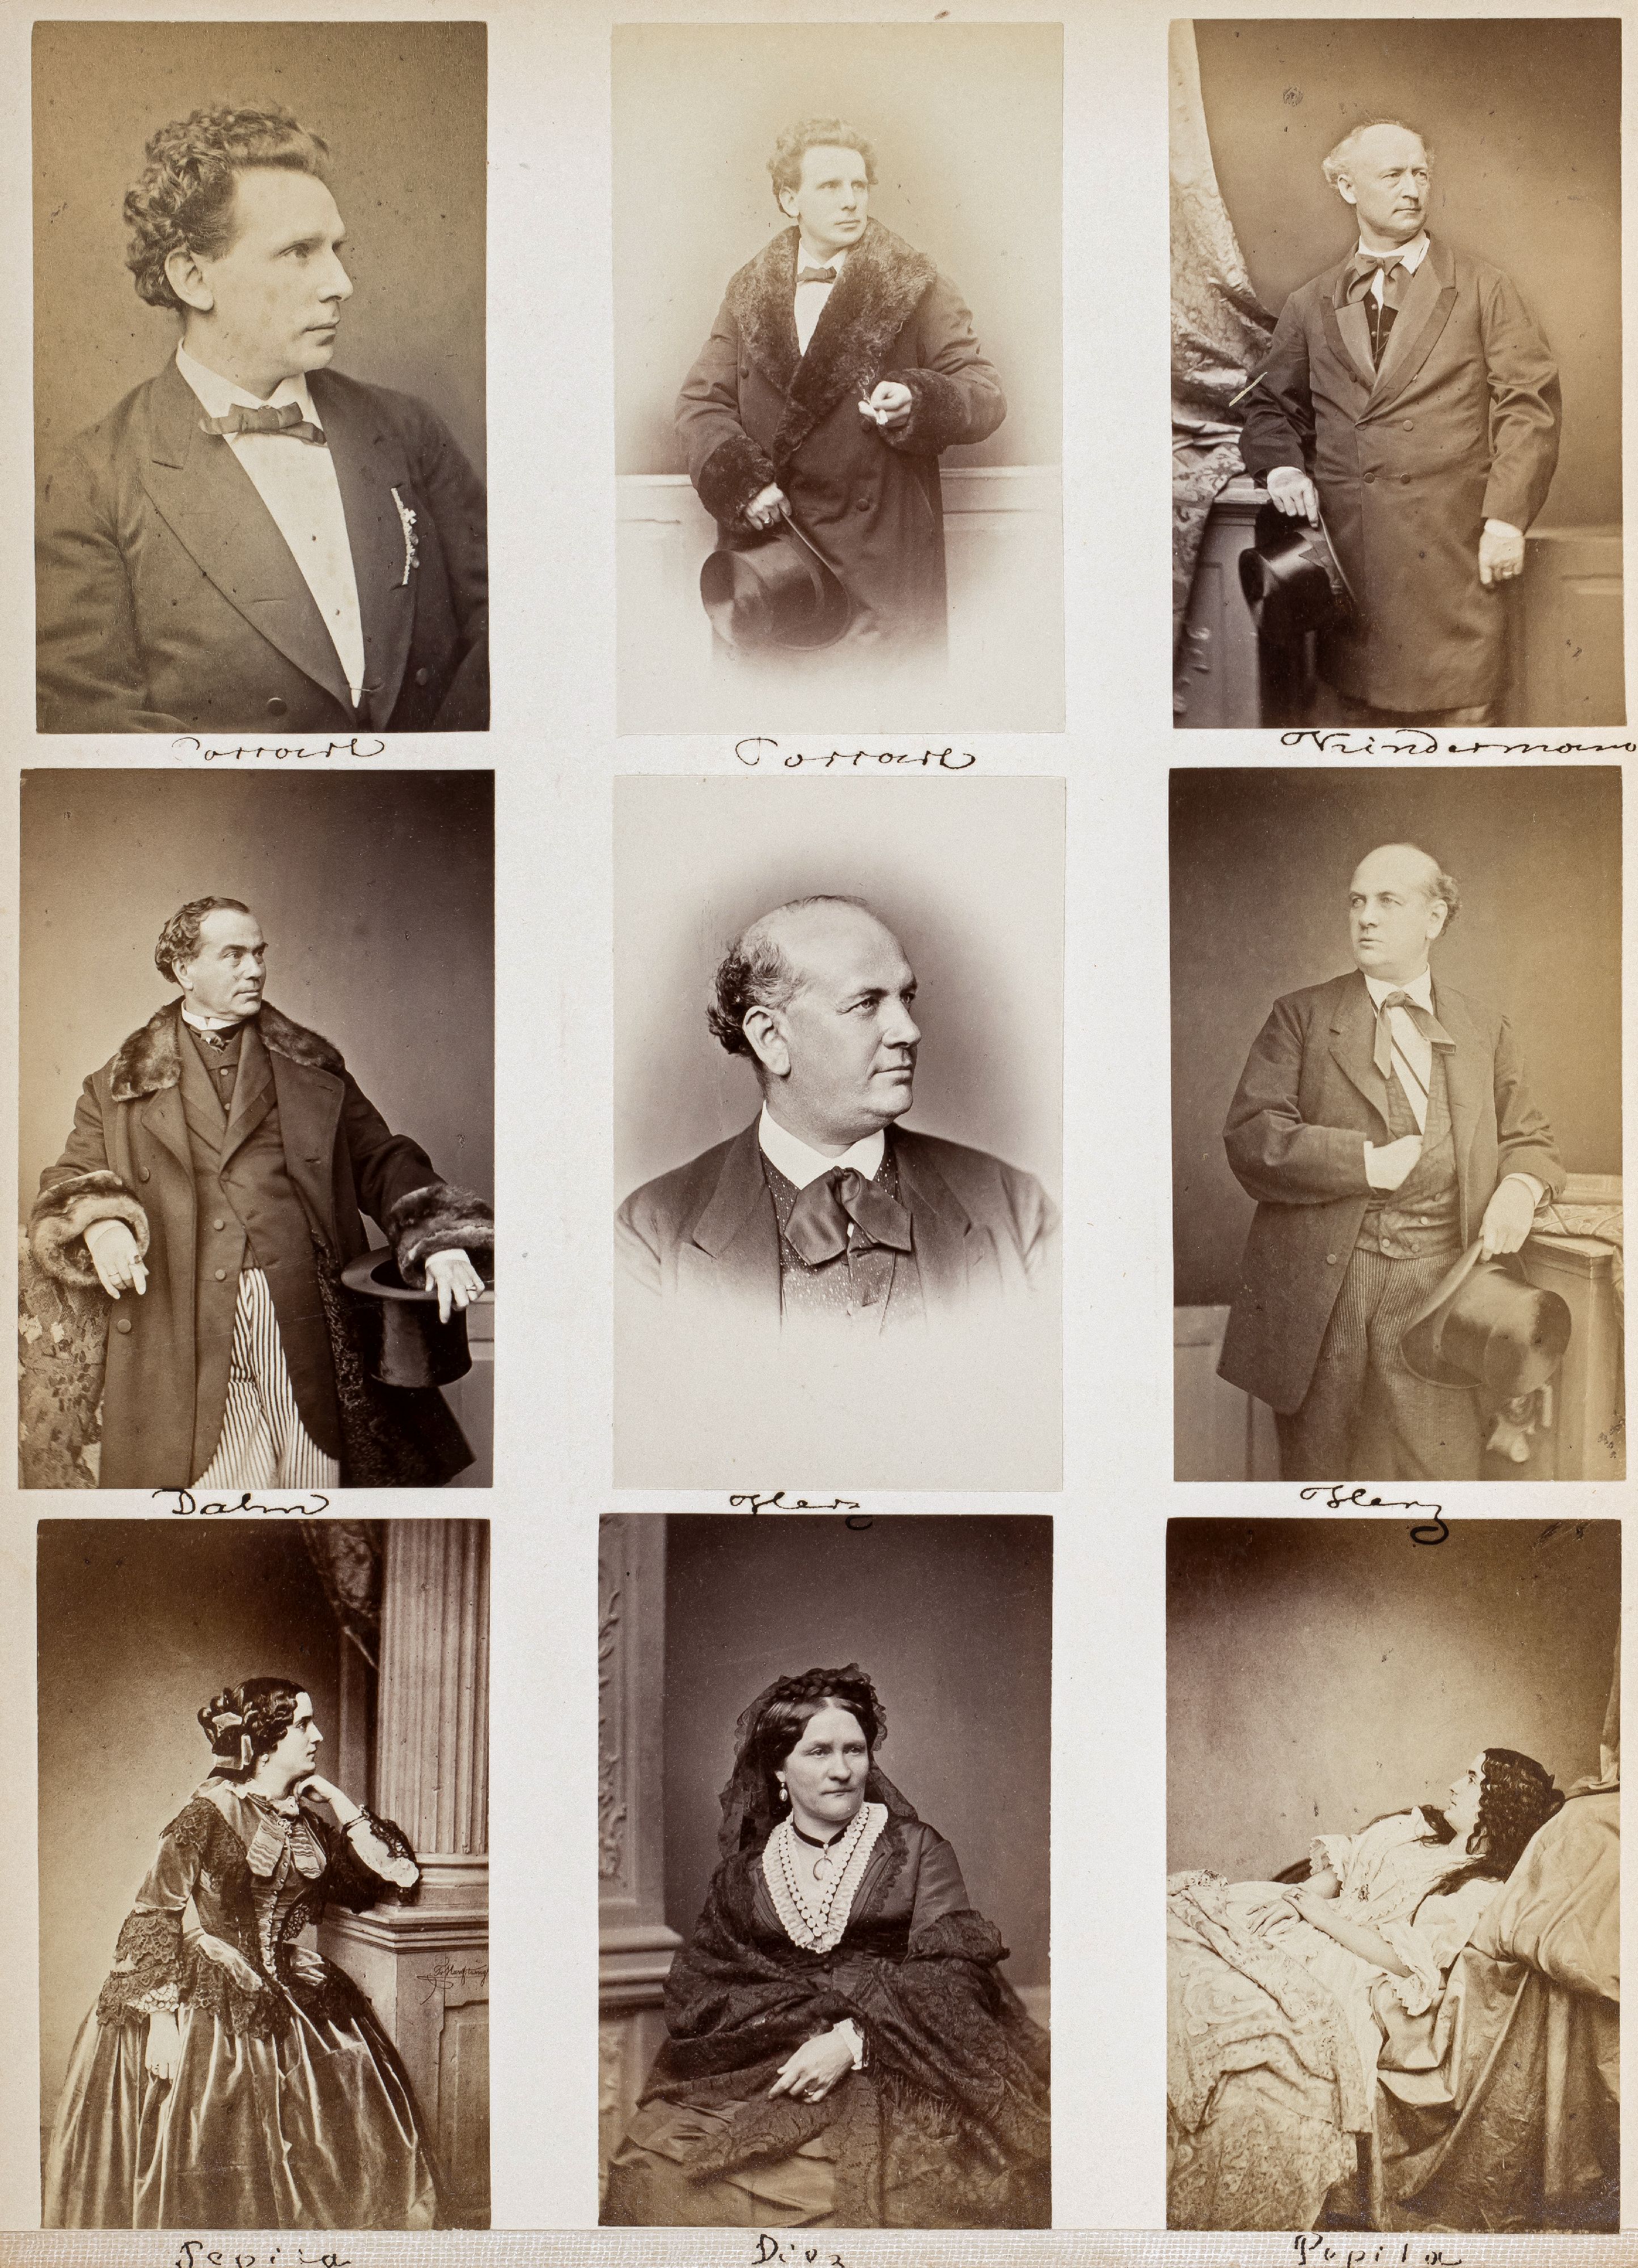 FOTOGRAFIE | Hanfstaengl, Franz | 1807 Baiernrain bei Tölz - 1877 München - Image 22 of 25